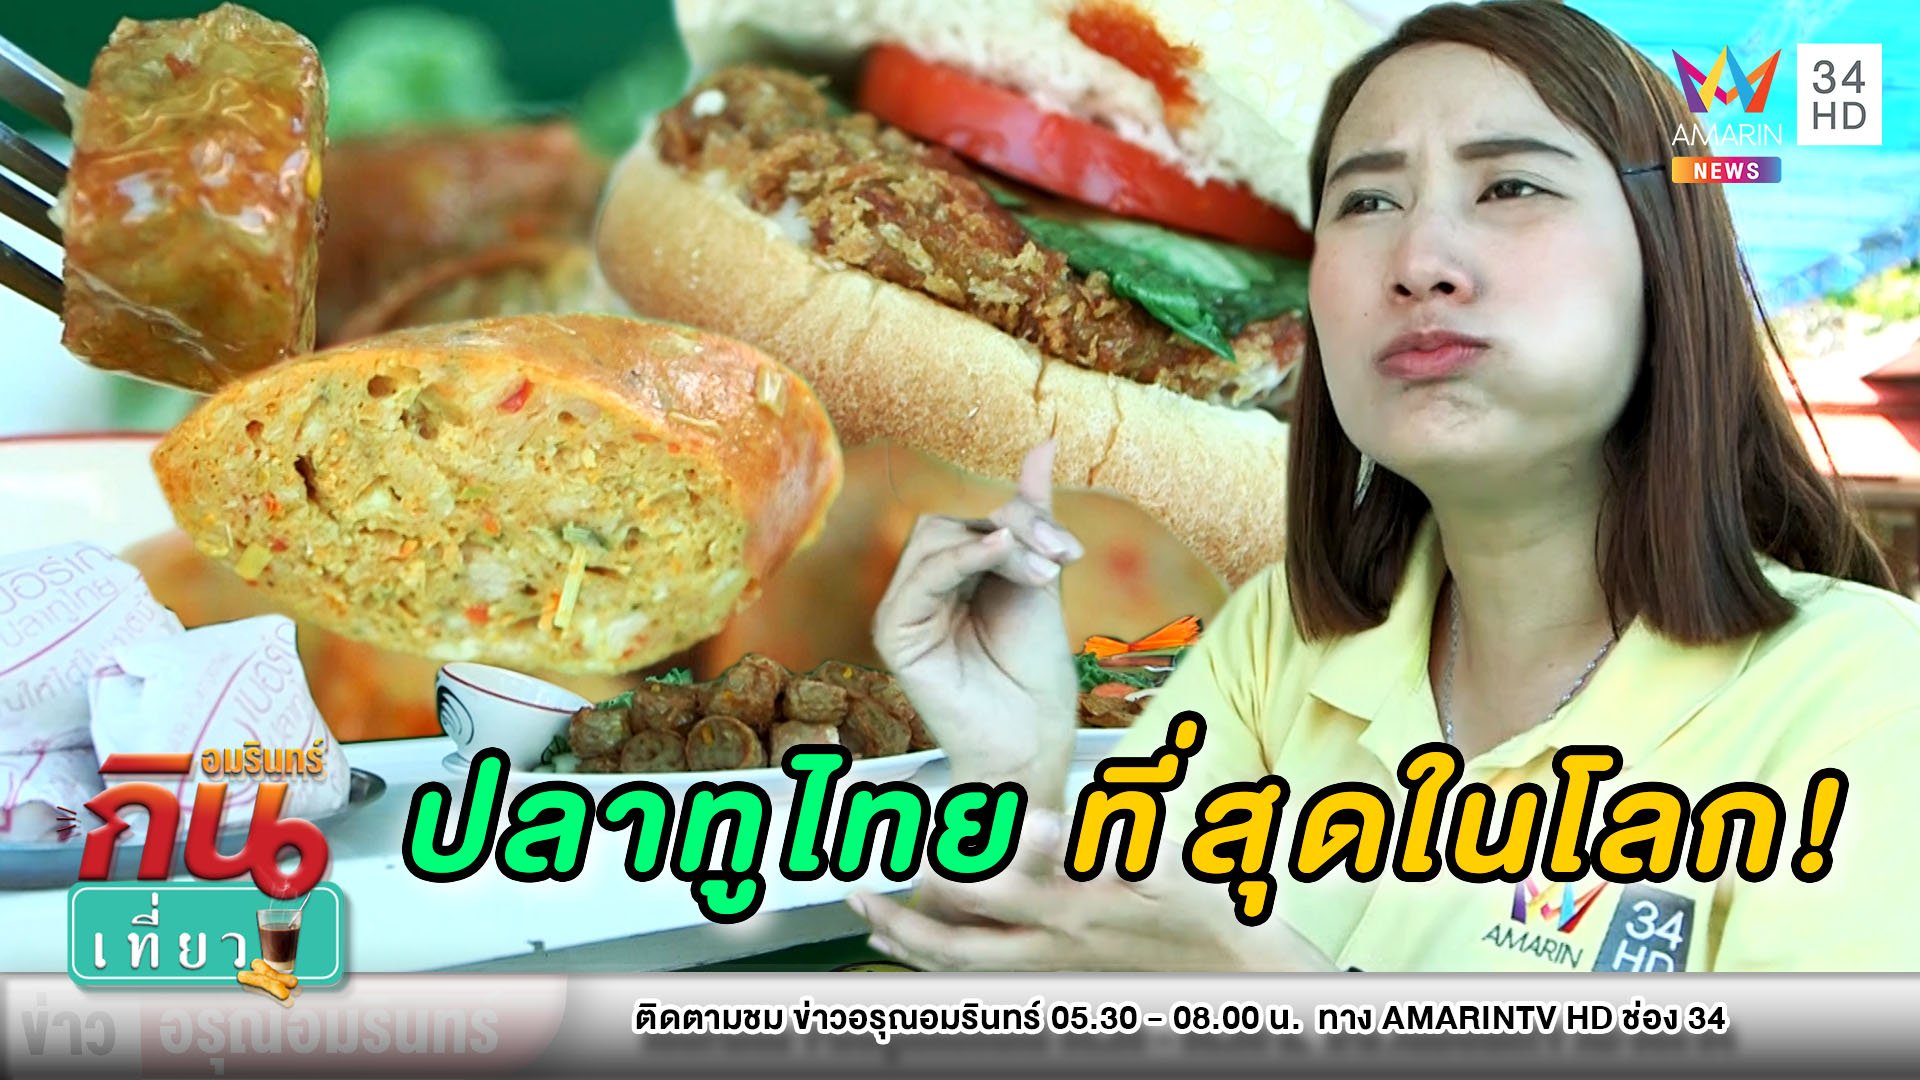 เบอร์เกอร์ปลาทูไทย ชาตินี้ต้องลอง! | ข่าวอรุณอมรินทร์ | 2 ส.ค. 63 | AMARIN TVHD34